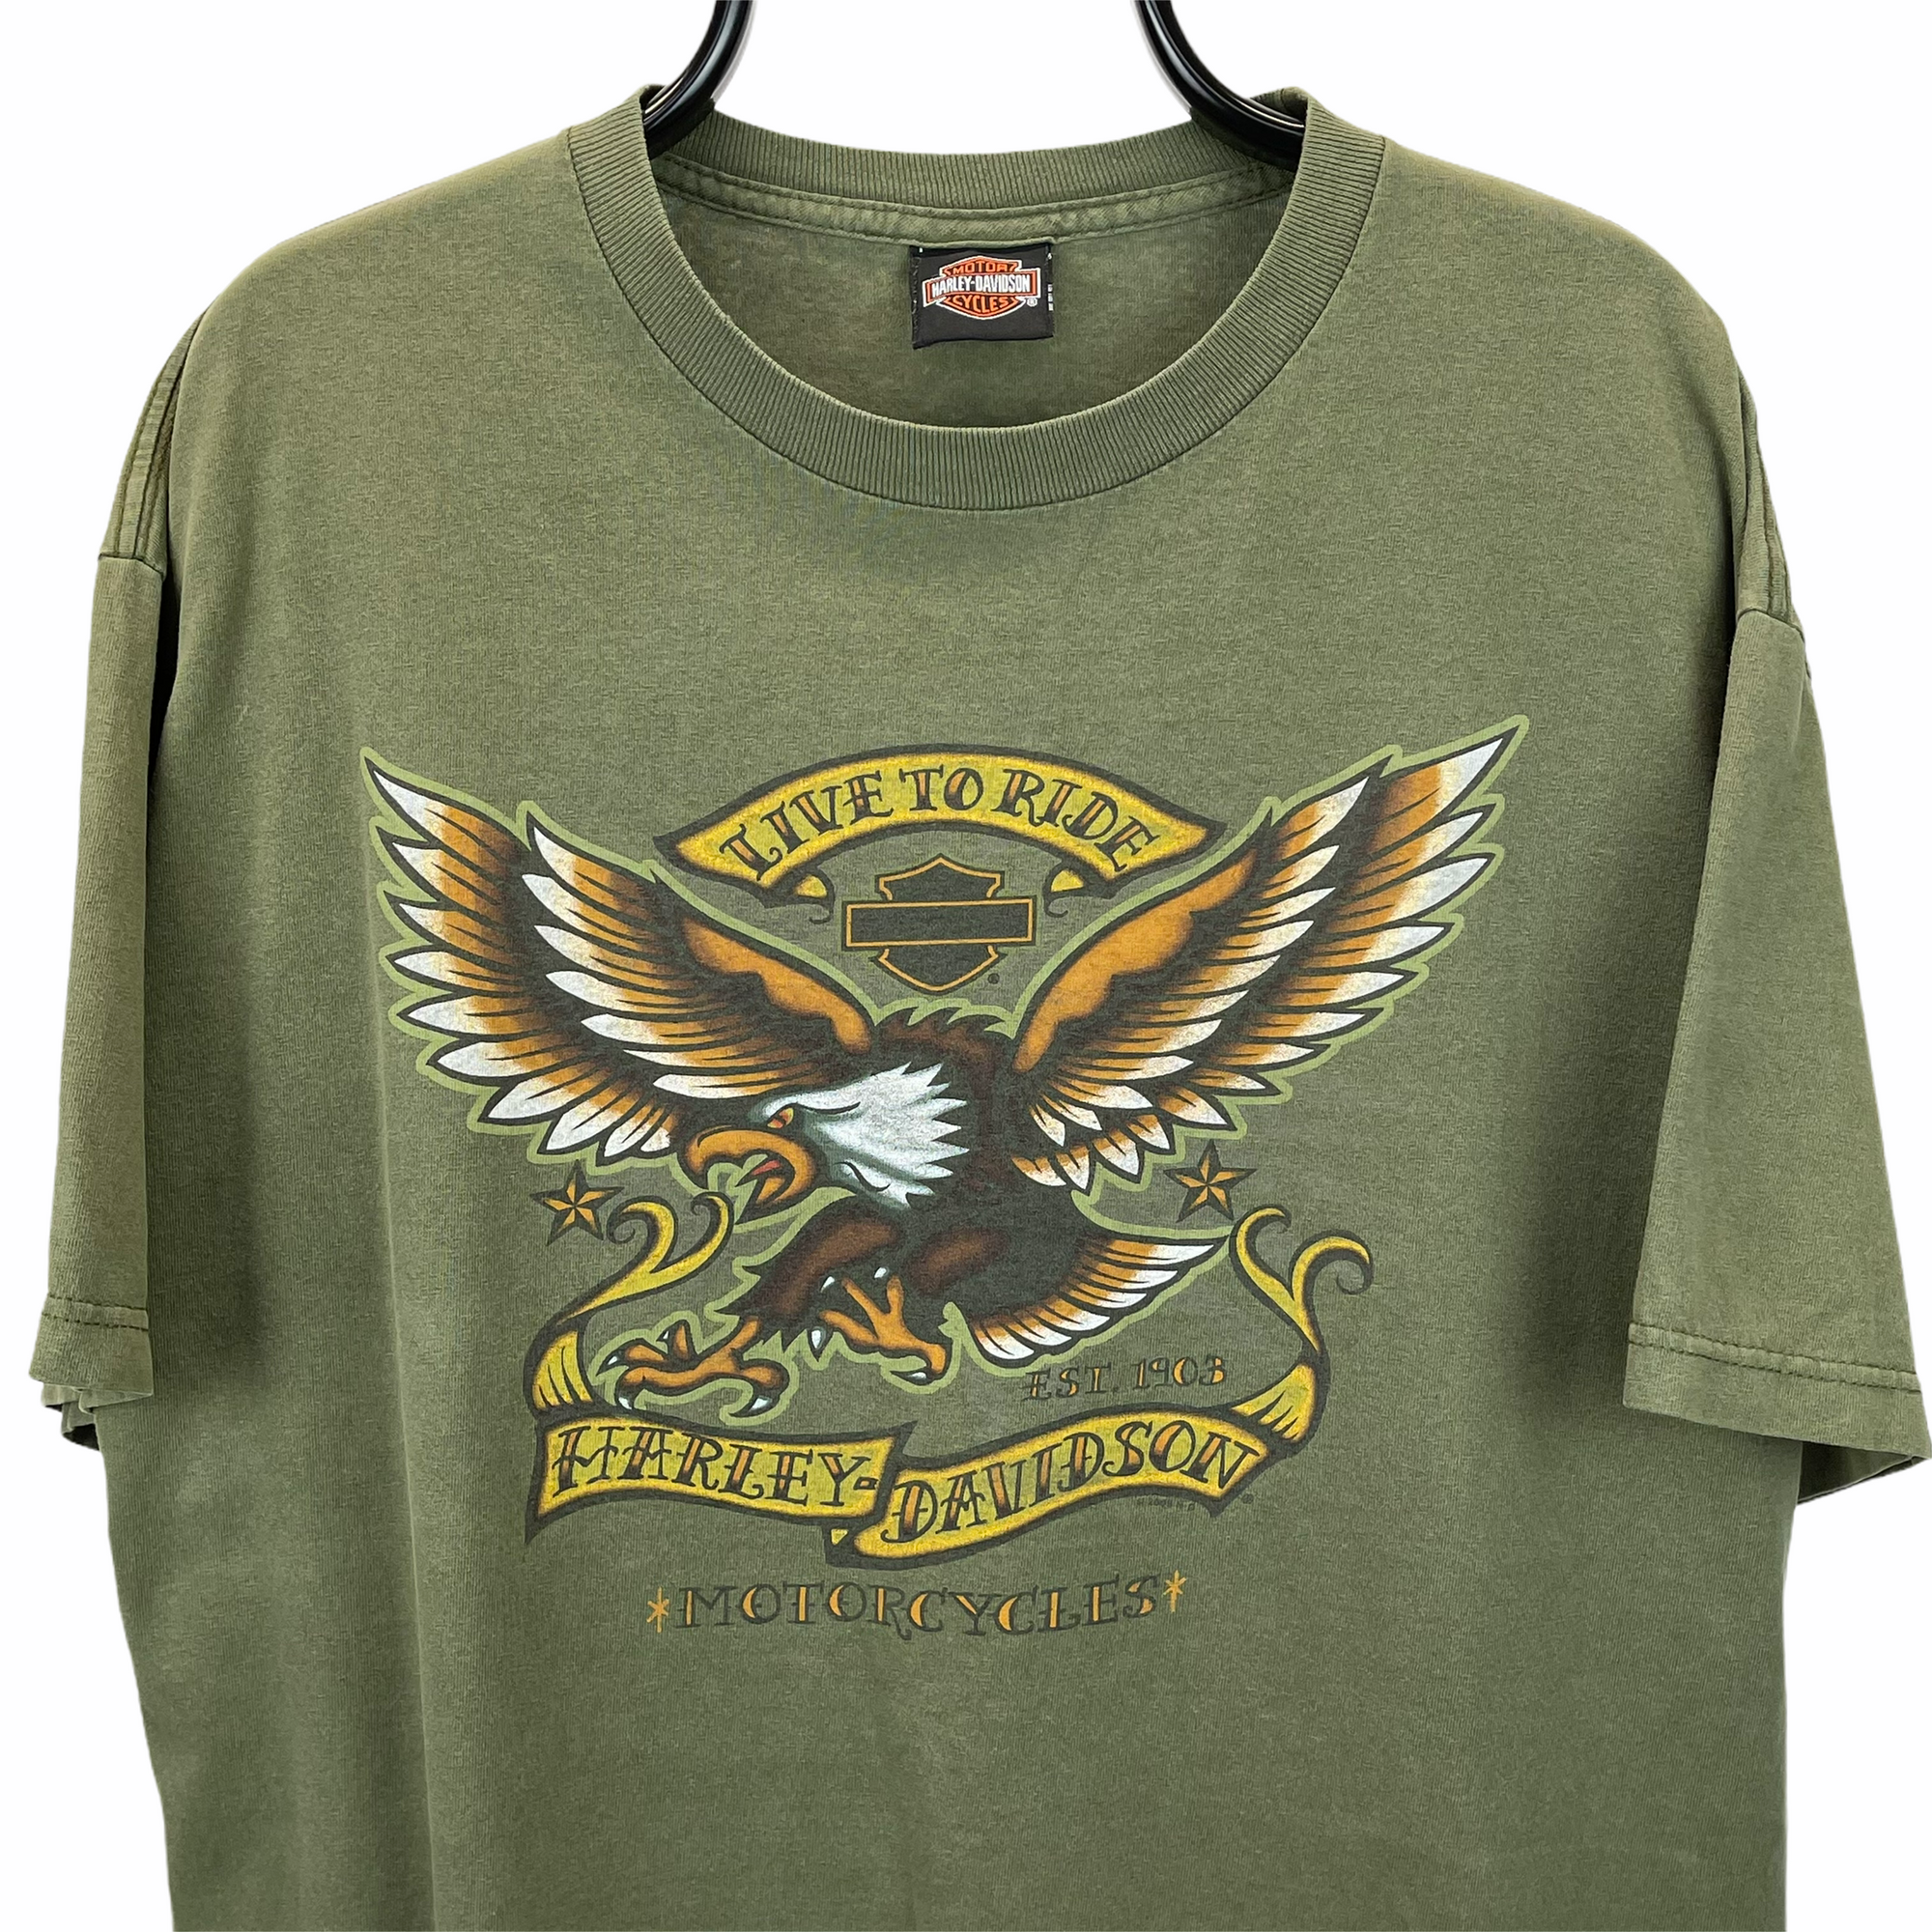 Vintage Harley Davidson Eagle Tee in Olive - Men's Large/Women's XL